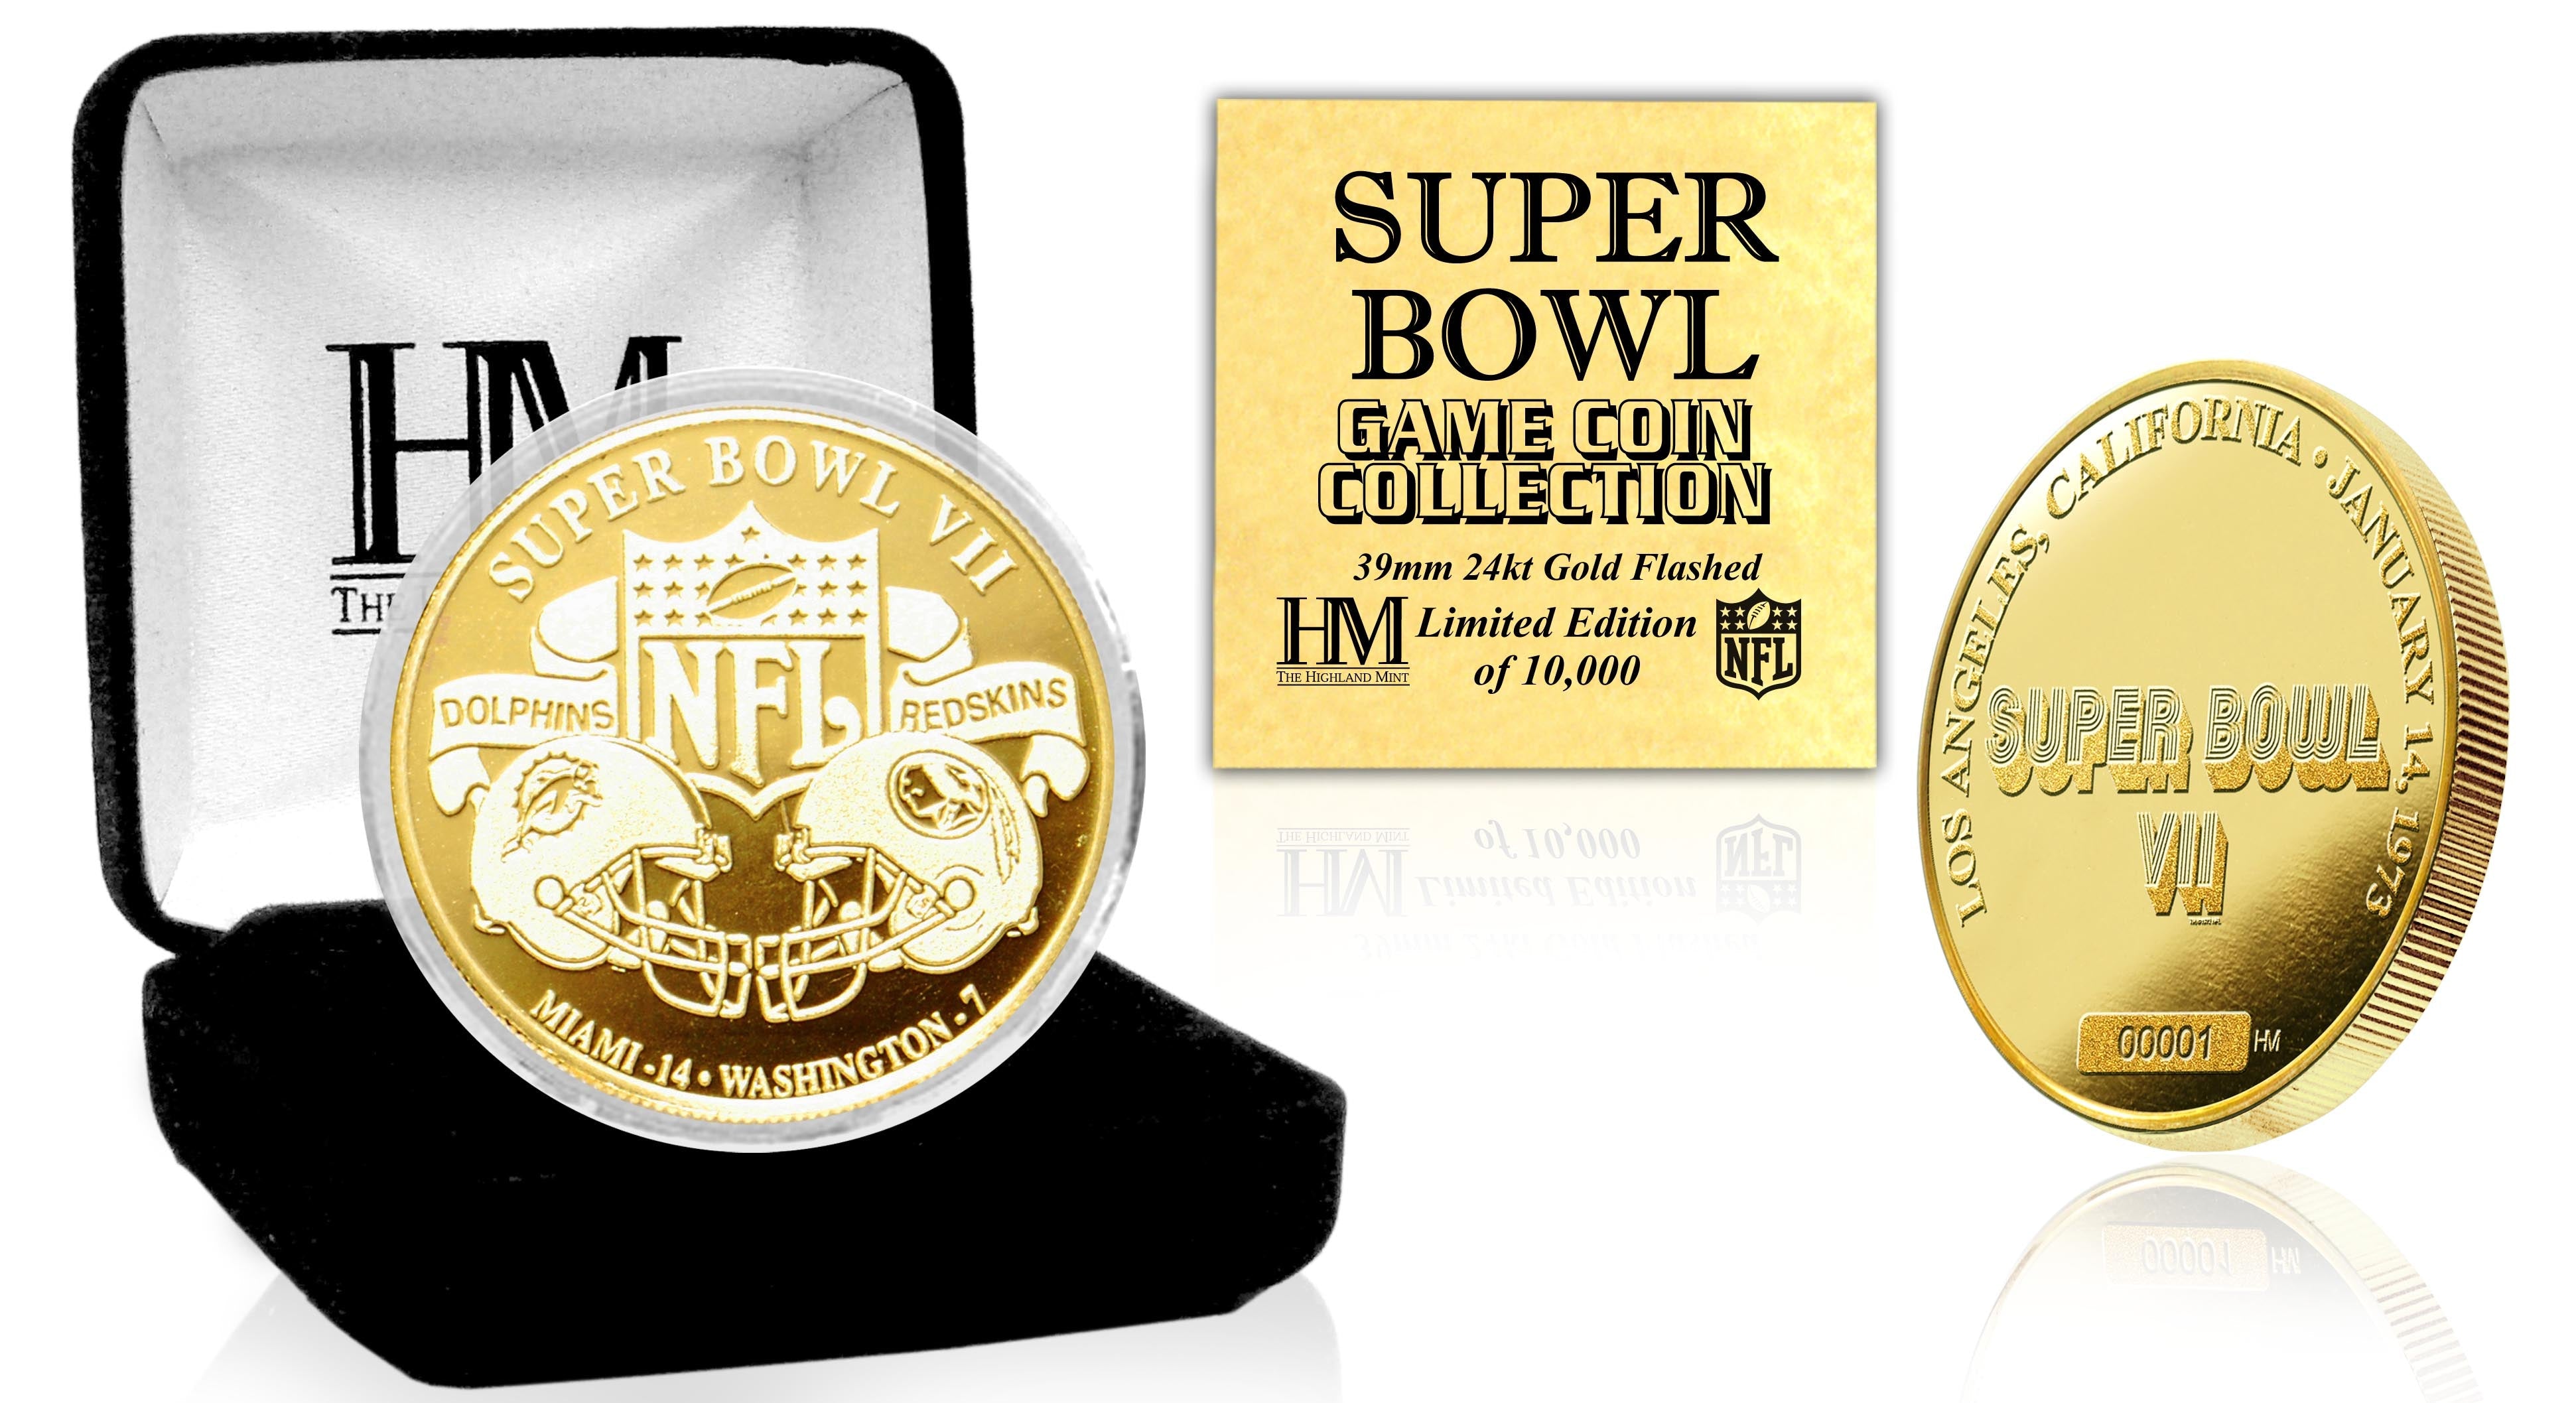 Super Bowl VII 24kt Gold Flip Coin